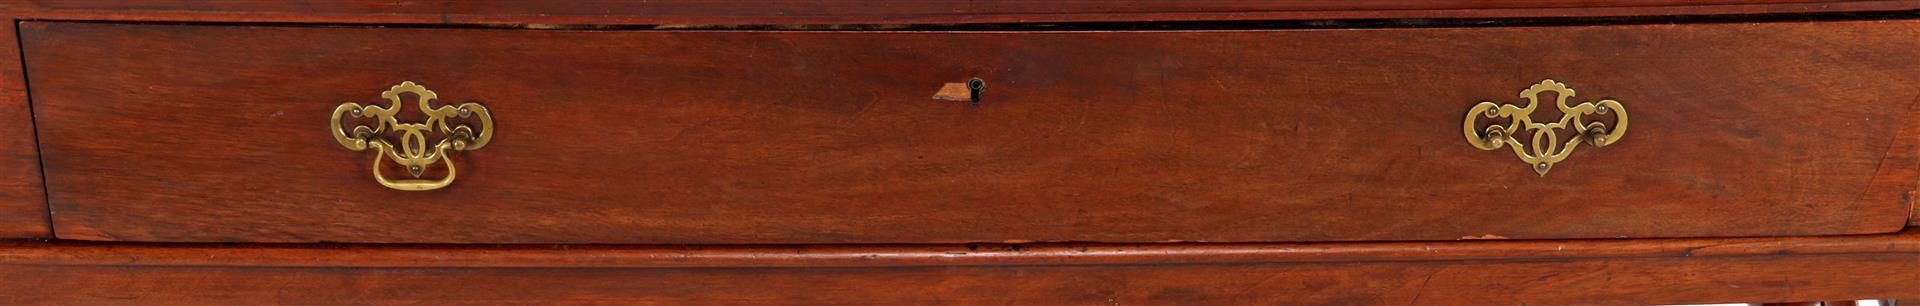 Oak cross leg cabinet - Image 3 of 4